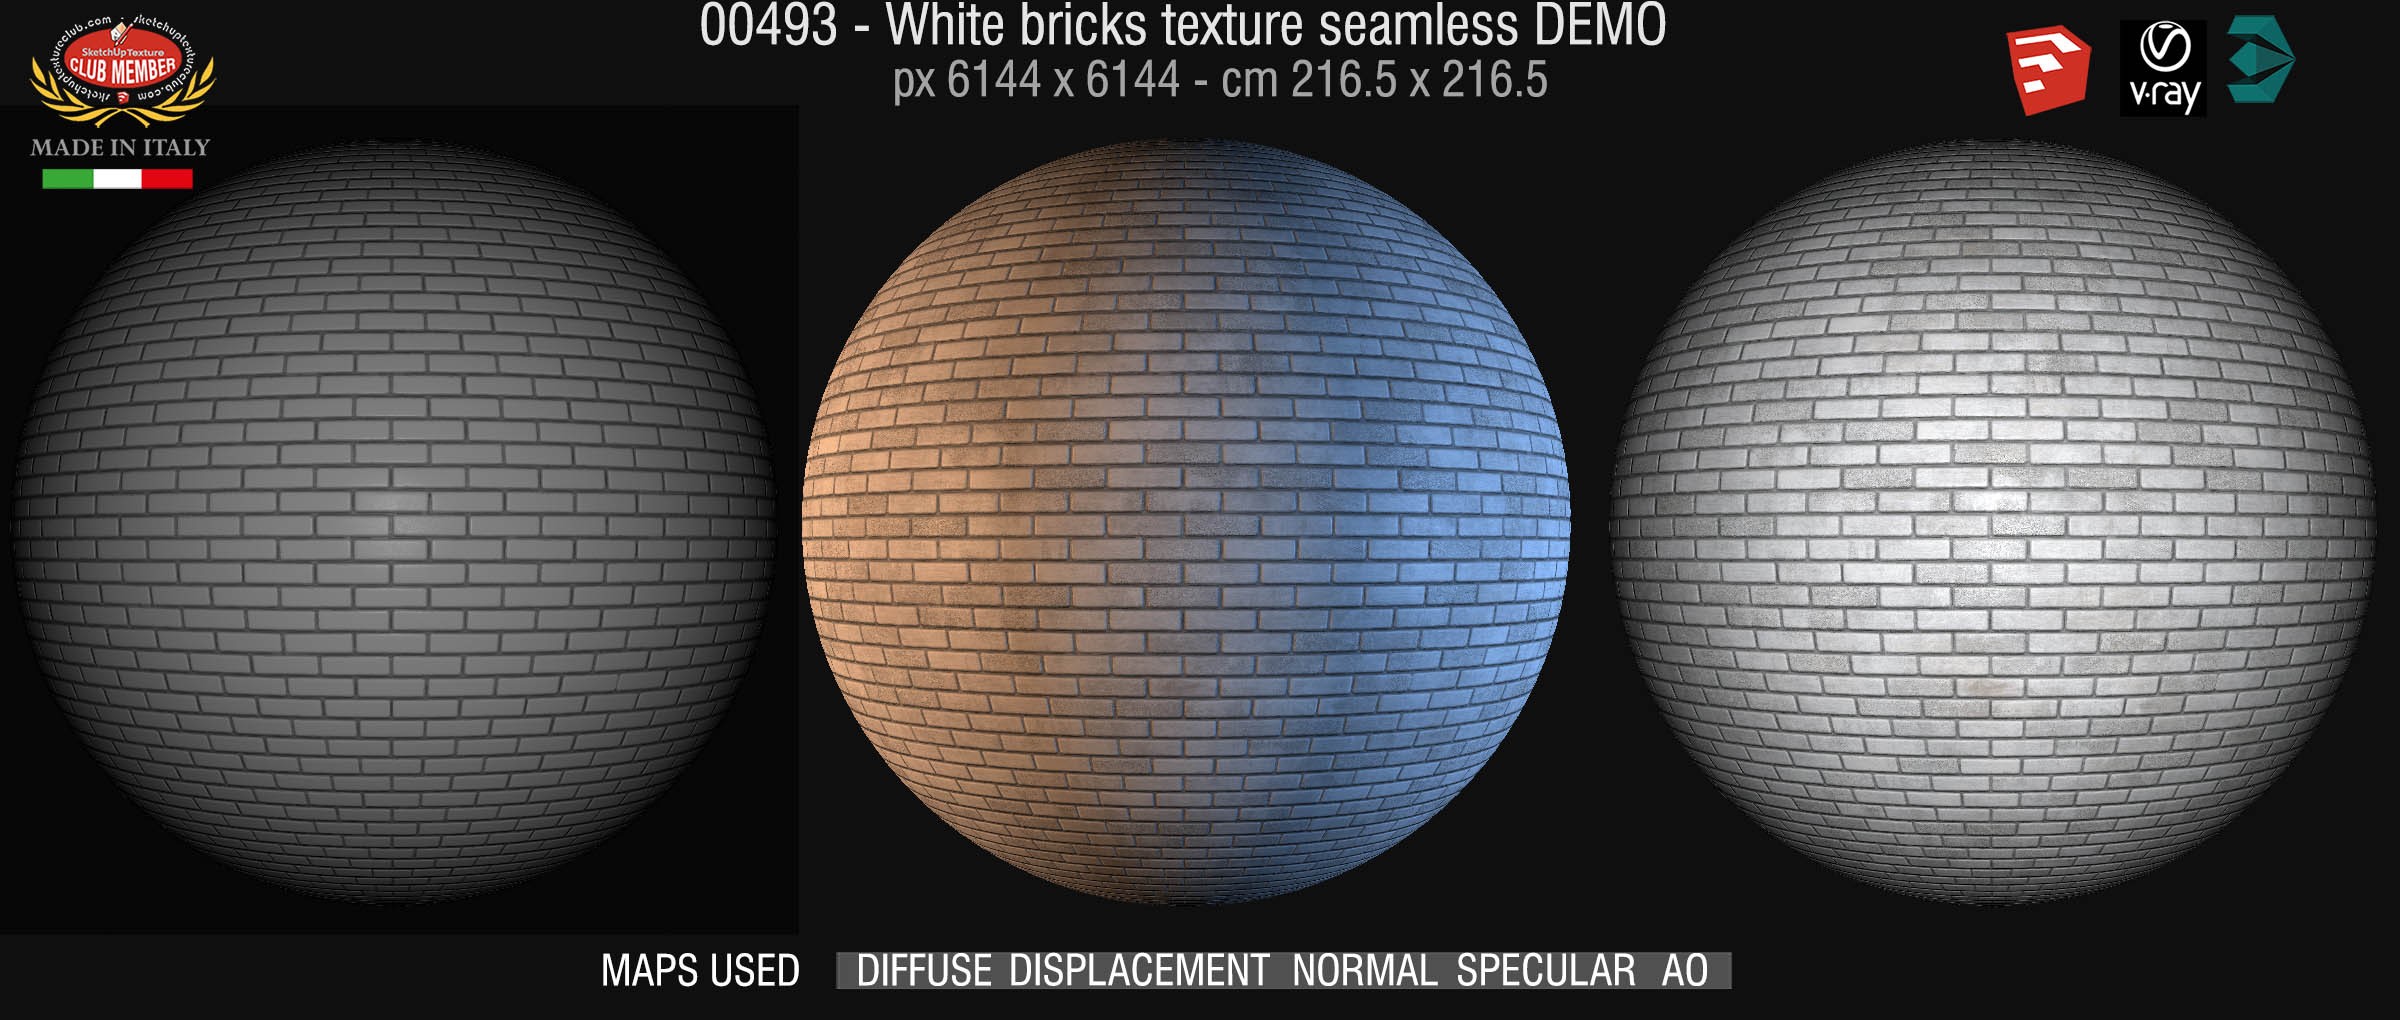 00493 White bricks texture seamless + maps DEMO